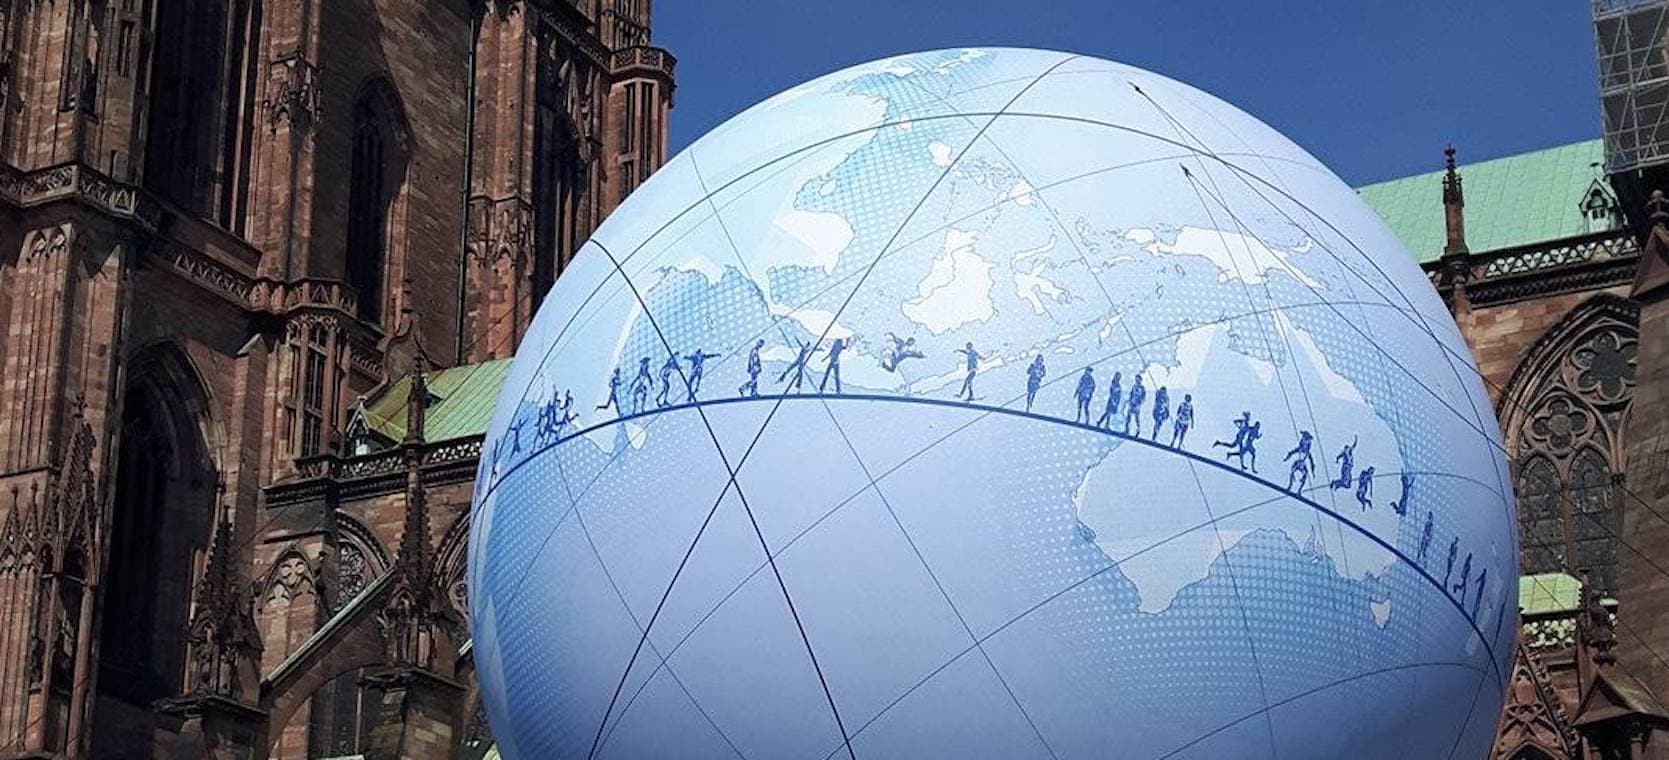 La grosse boule place du Château, c’est pour l’Exposition universelle 2025